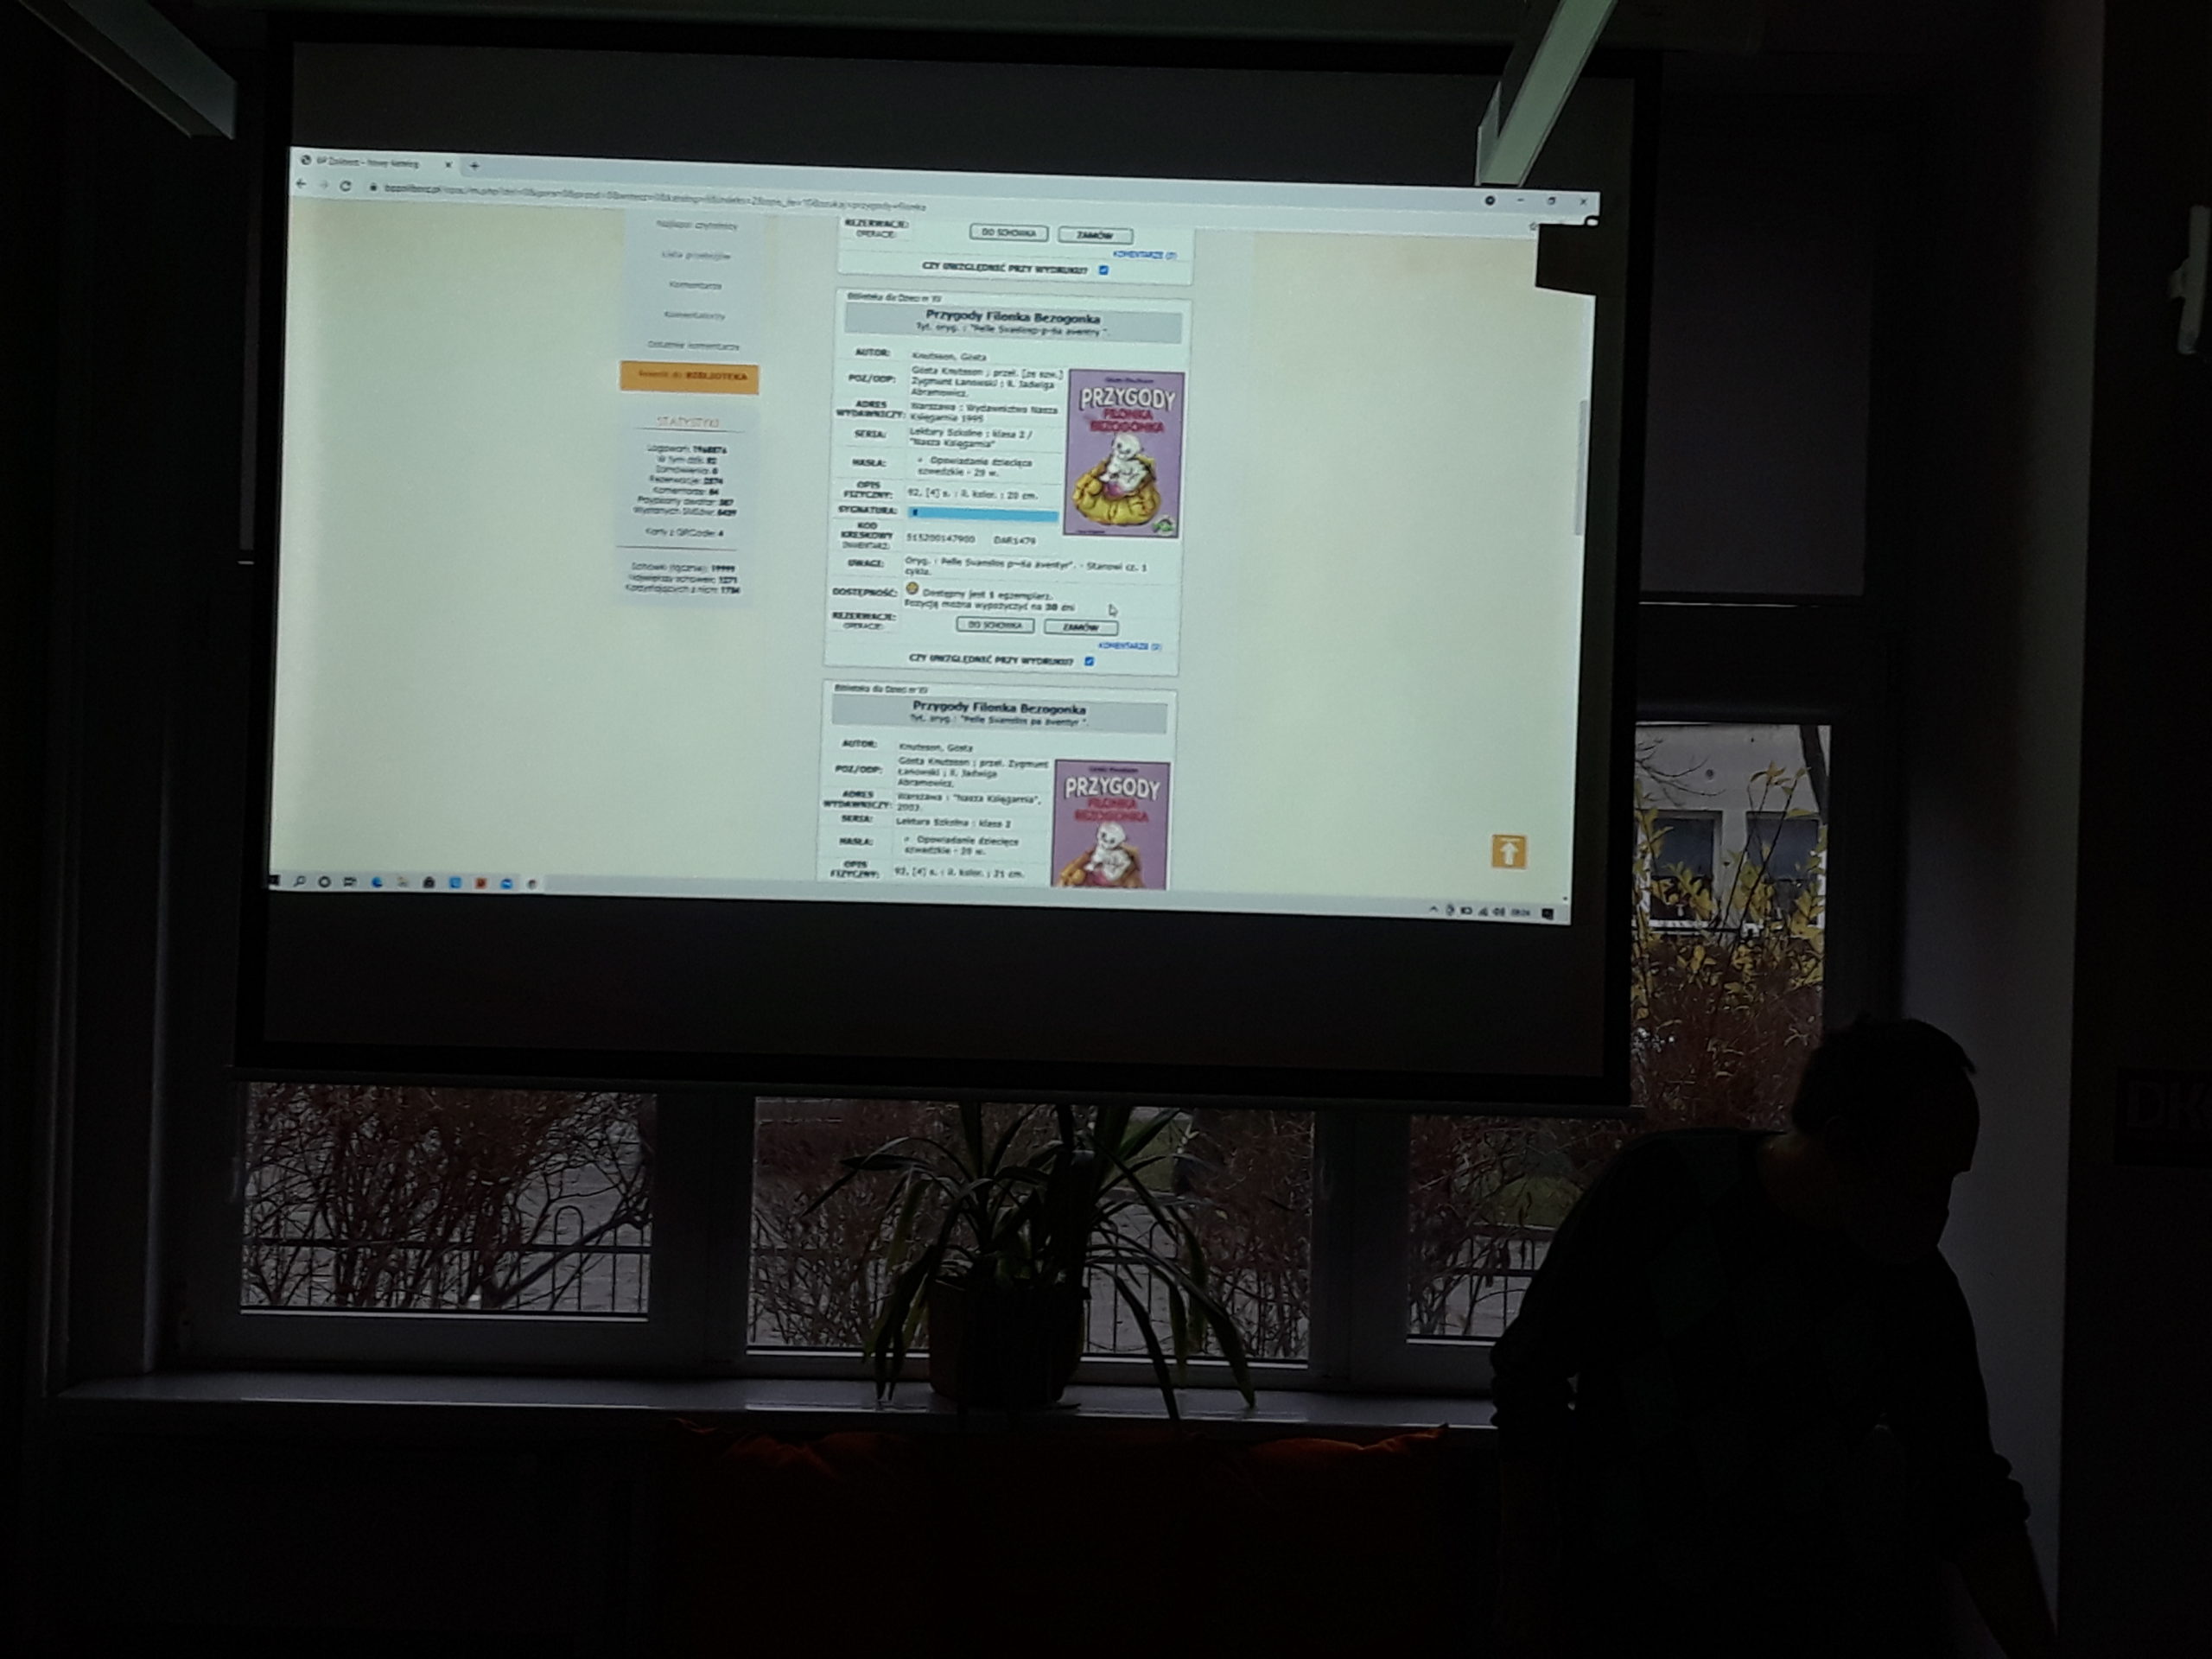 zdjęcie z lekcji bibliotecznej przedstawiające widok z rzutnika na którym znajduje się widok katalogu internetowego biblioteki